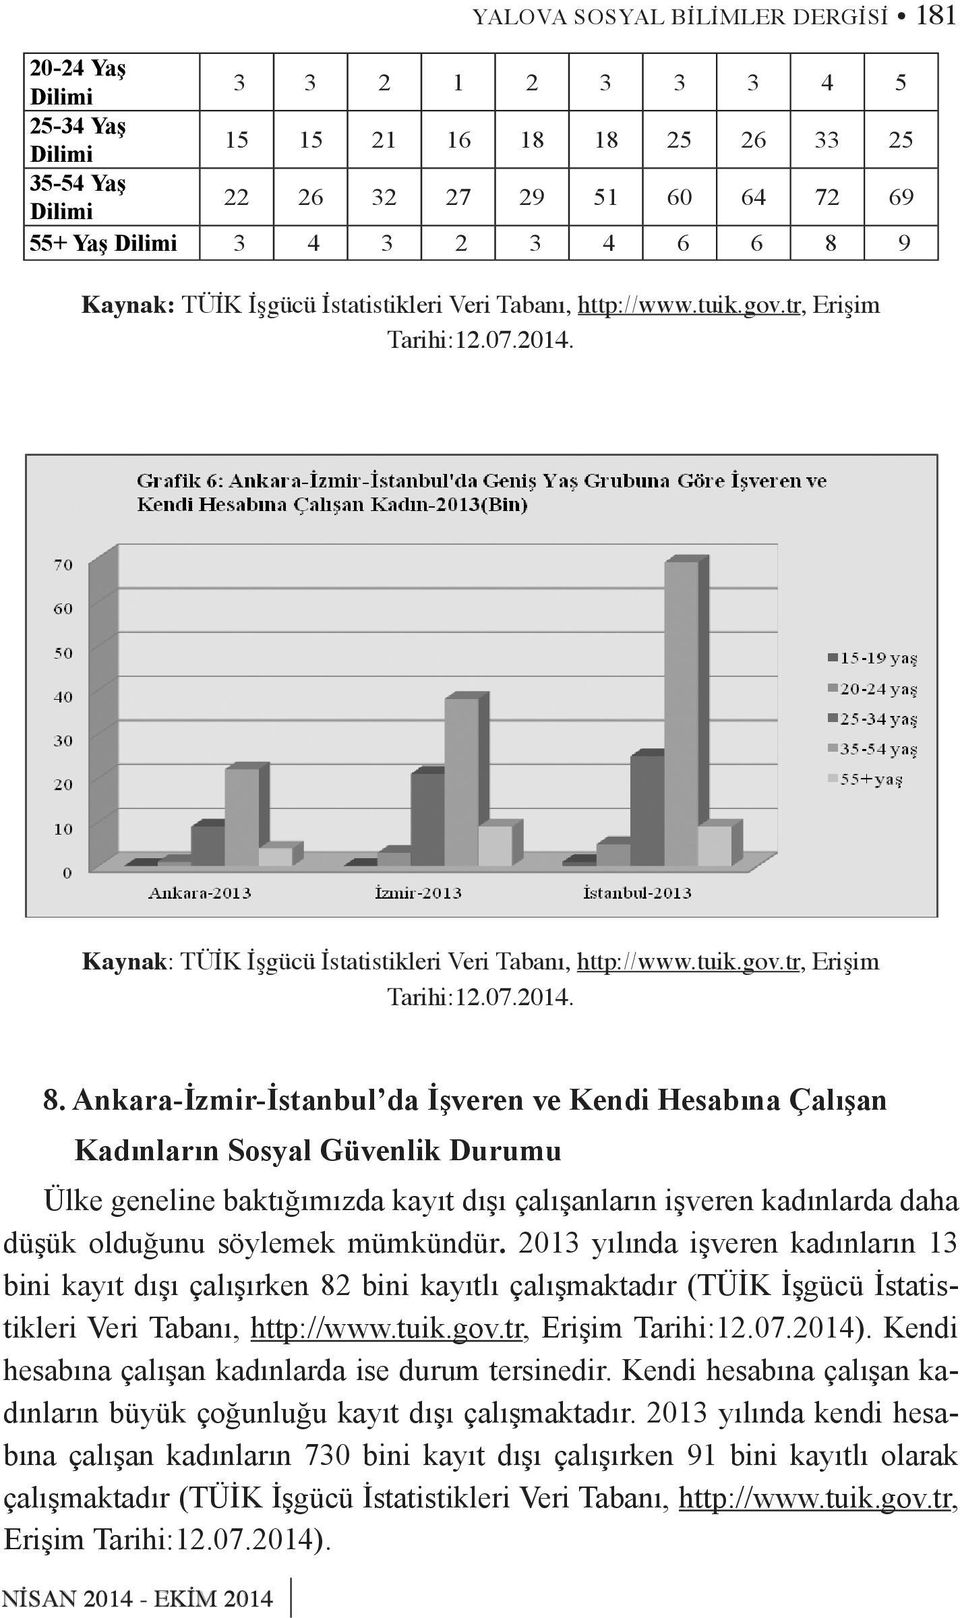 Ankara-İzmir-İstanbul da İşveren ve Kendi Hesabına Çalışan Kadınların Sosyal Güvenlik Durumu Ülke geneline baktığımızda kayıt dışı çalışanların işveren kadınlarda daha düşük olduğunu söylemek